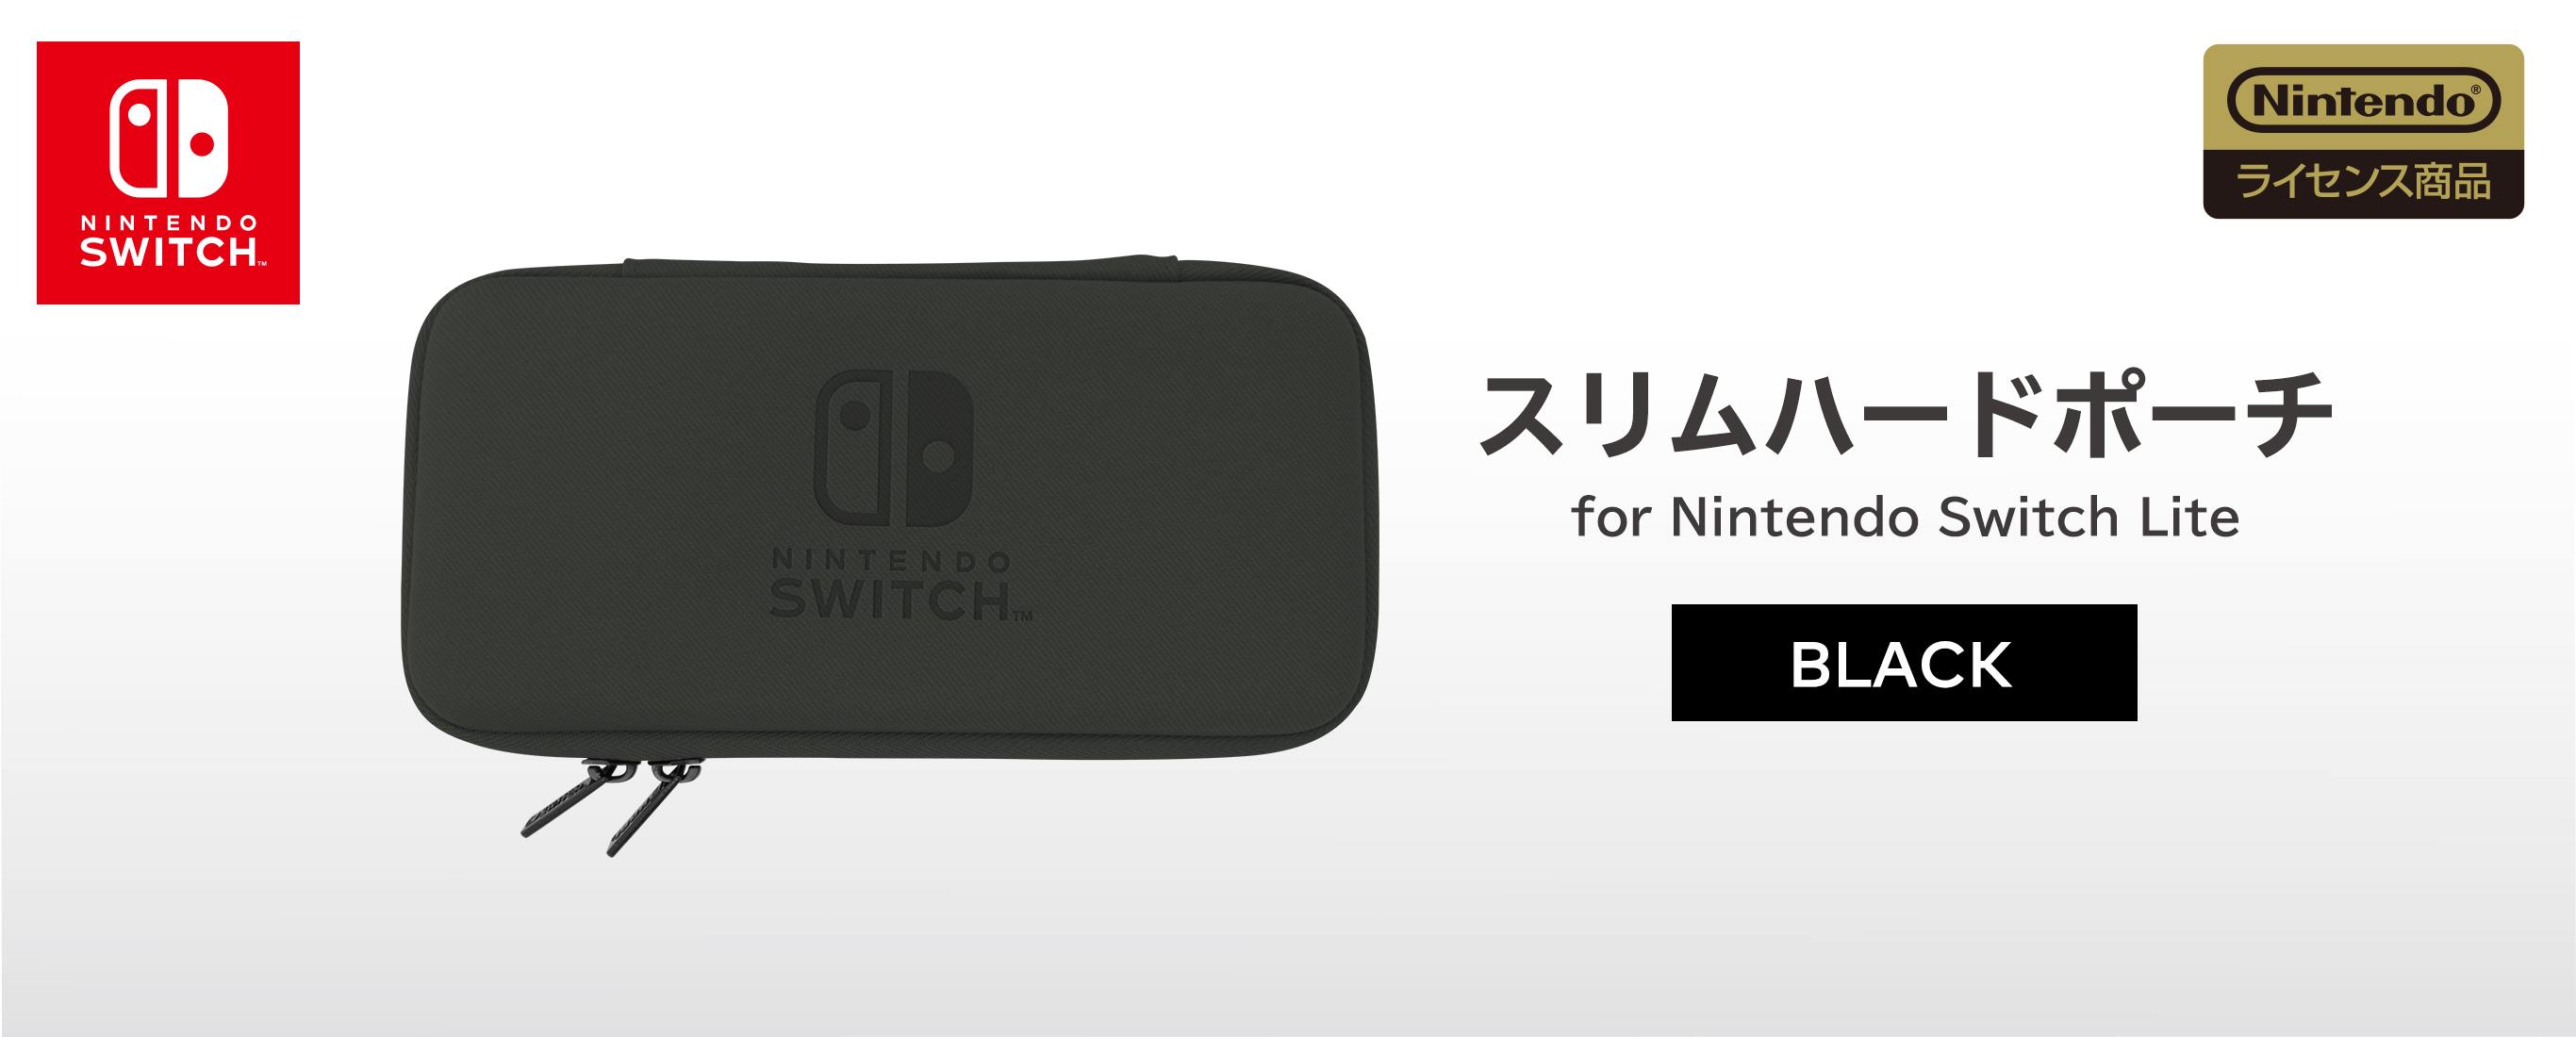 株式会社 HORI スリムハードポーチ for Nintendo Switch Lite ブラック